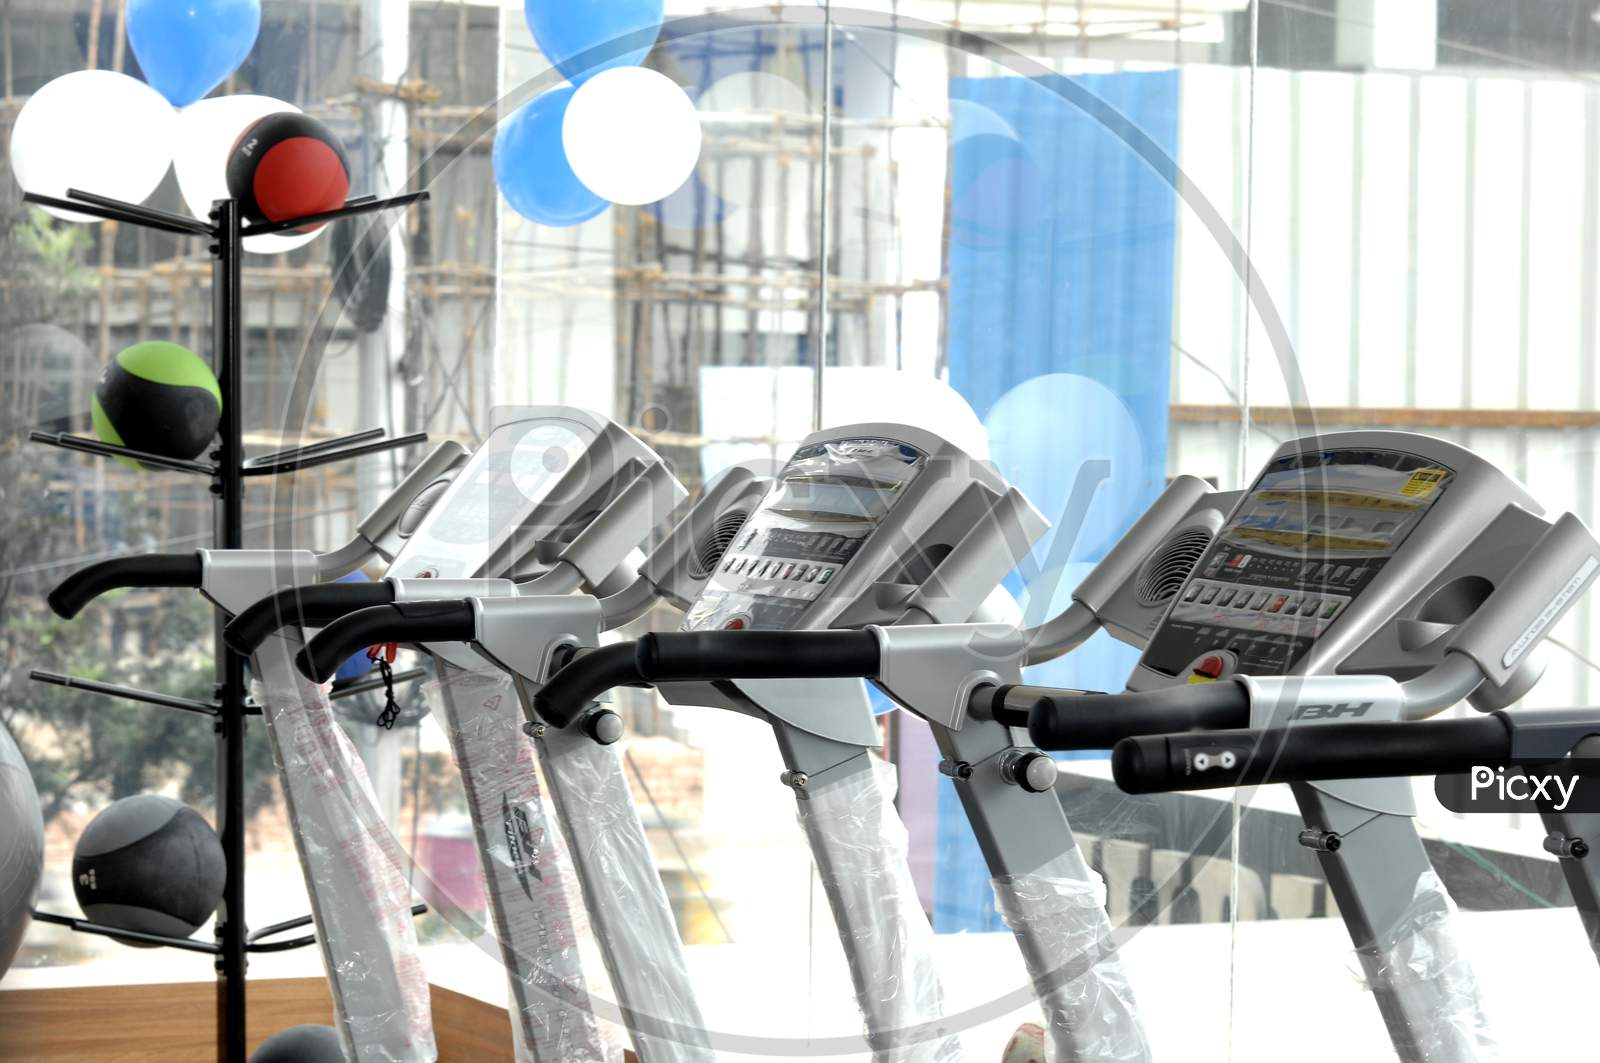 Treadmill displays in a gym